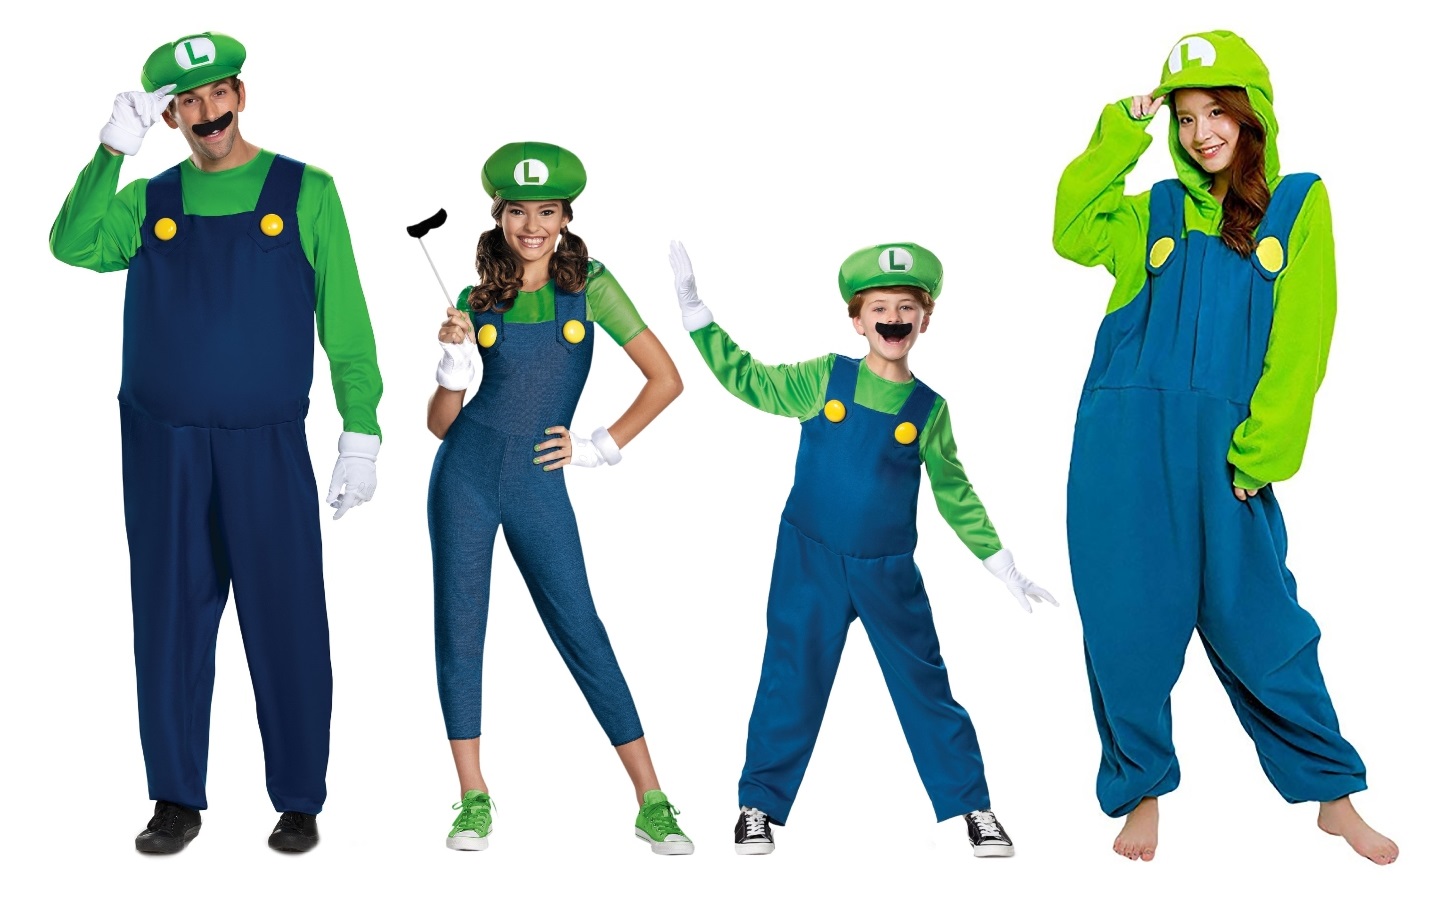 Luigi Costumes